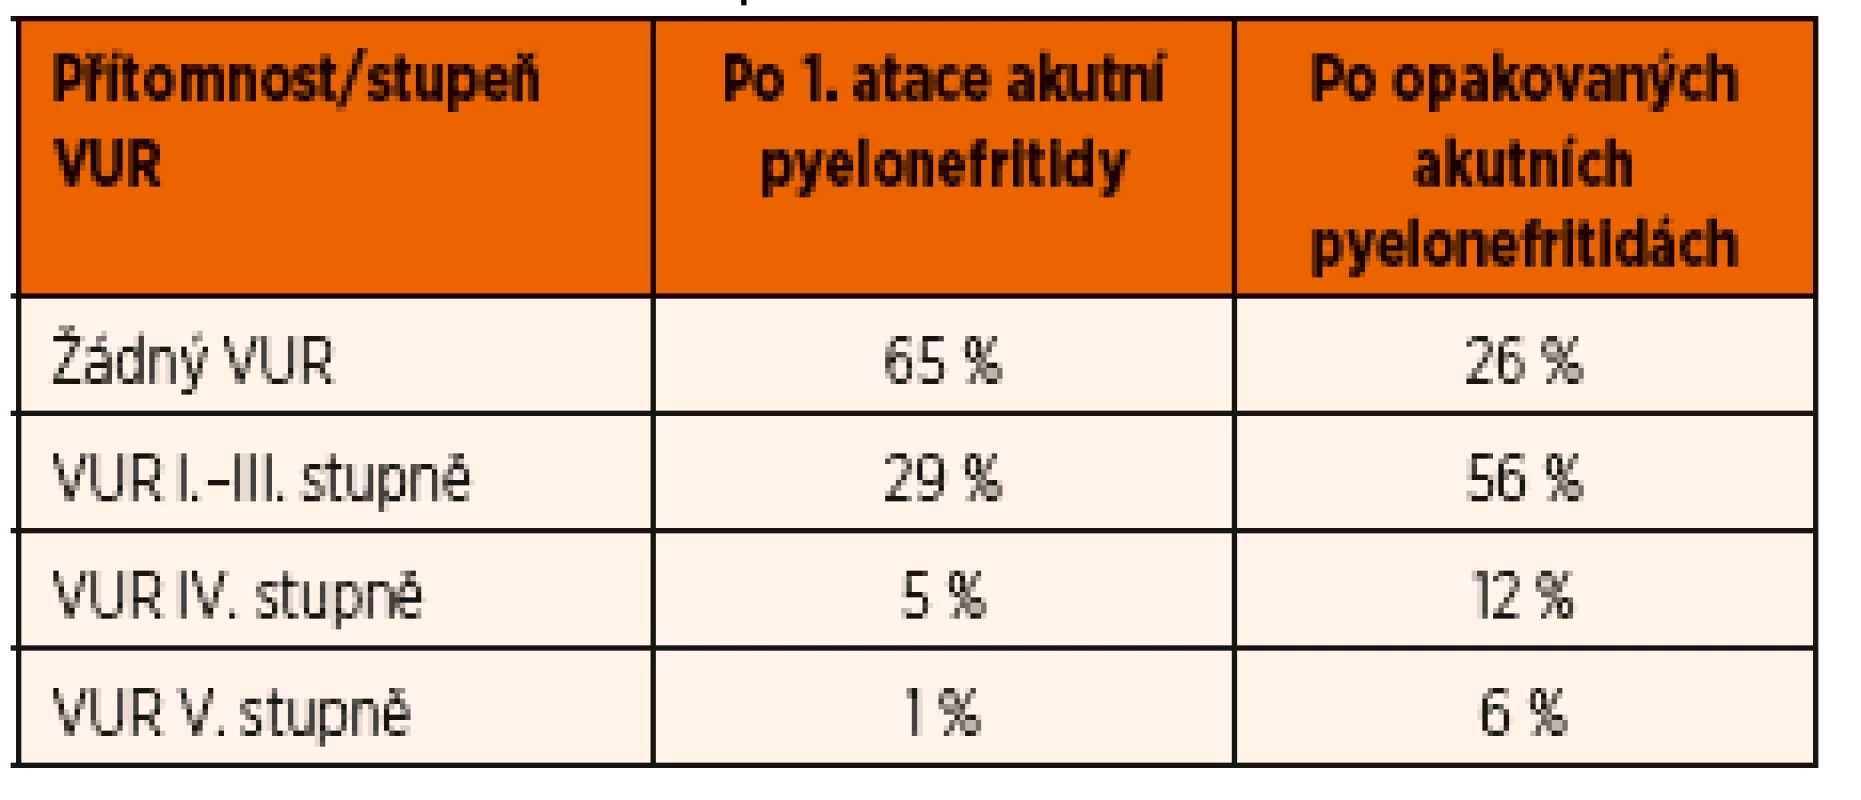 Výskyt VUR u kojenců podle počtu prodělaných akutních pyelonefritid (adaptováno z Clinical Practice Guideline Urinary Tract Infection 2011).